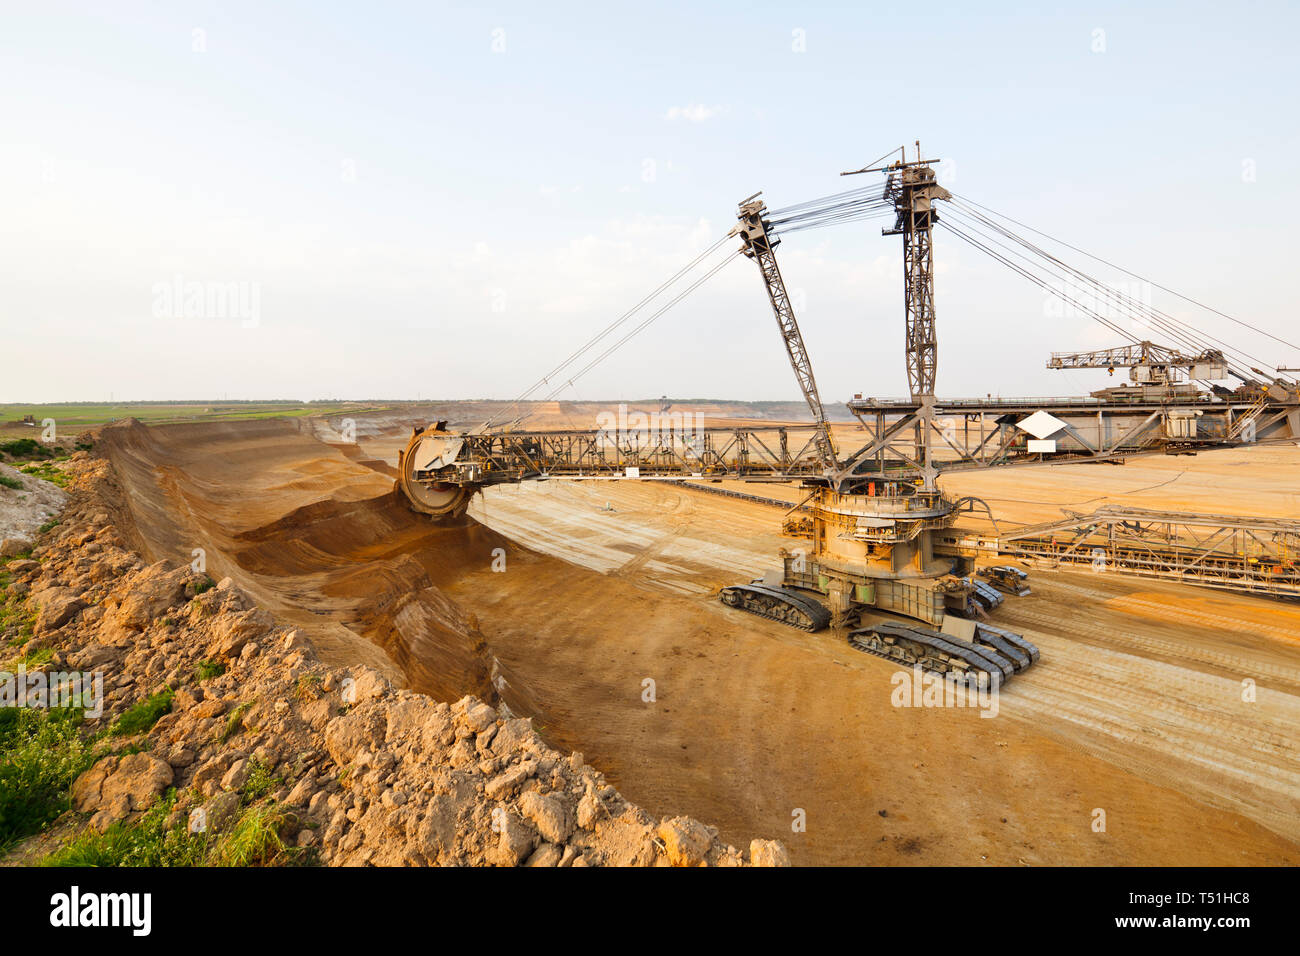 Ein Braunkohle Grube Mine mit einem riesigen schaufelradbagger, einer der weltweit größten beweglichen land Fahrzeuge. Stockfoto